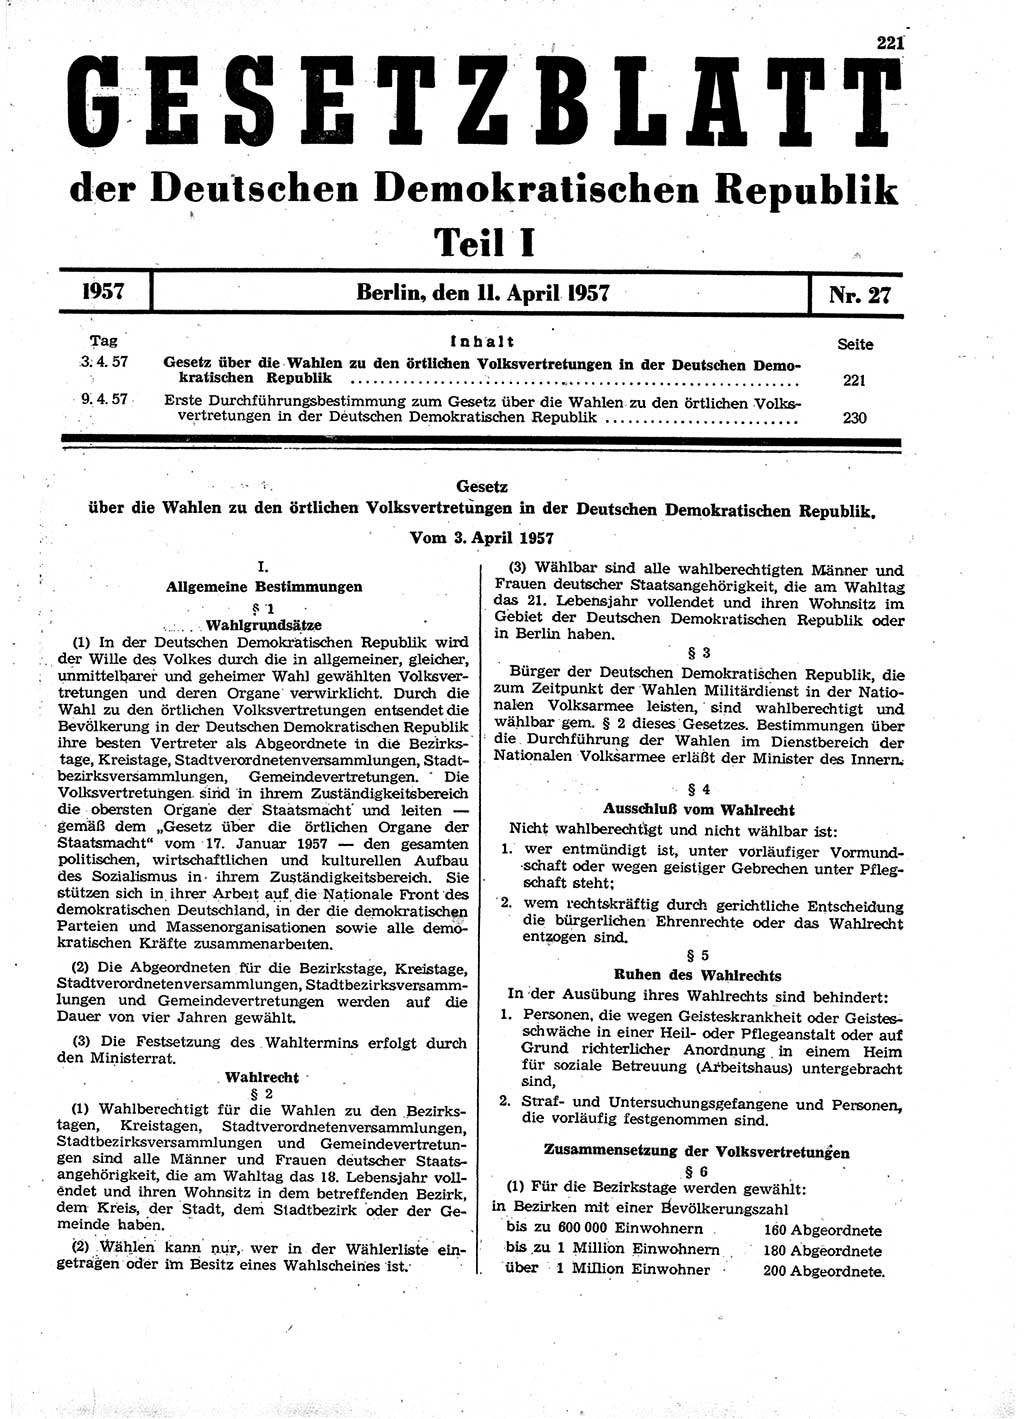 Gesetzblatt (GBl.) der Deutschen Demokratischen Republik (DDR) Teil Ⅰ 1957, Seite 221 (GBl. DDR Ⅰ 1957, S. 221)